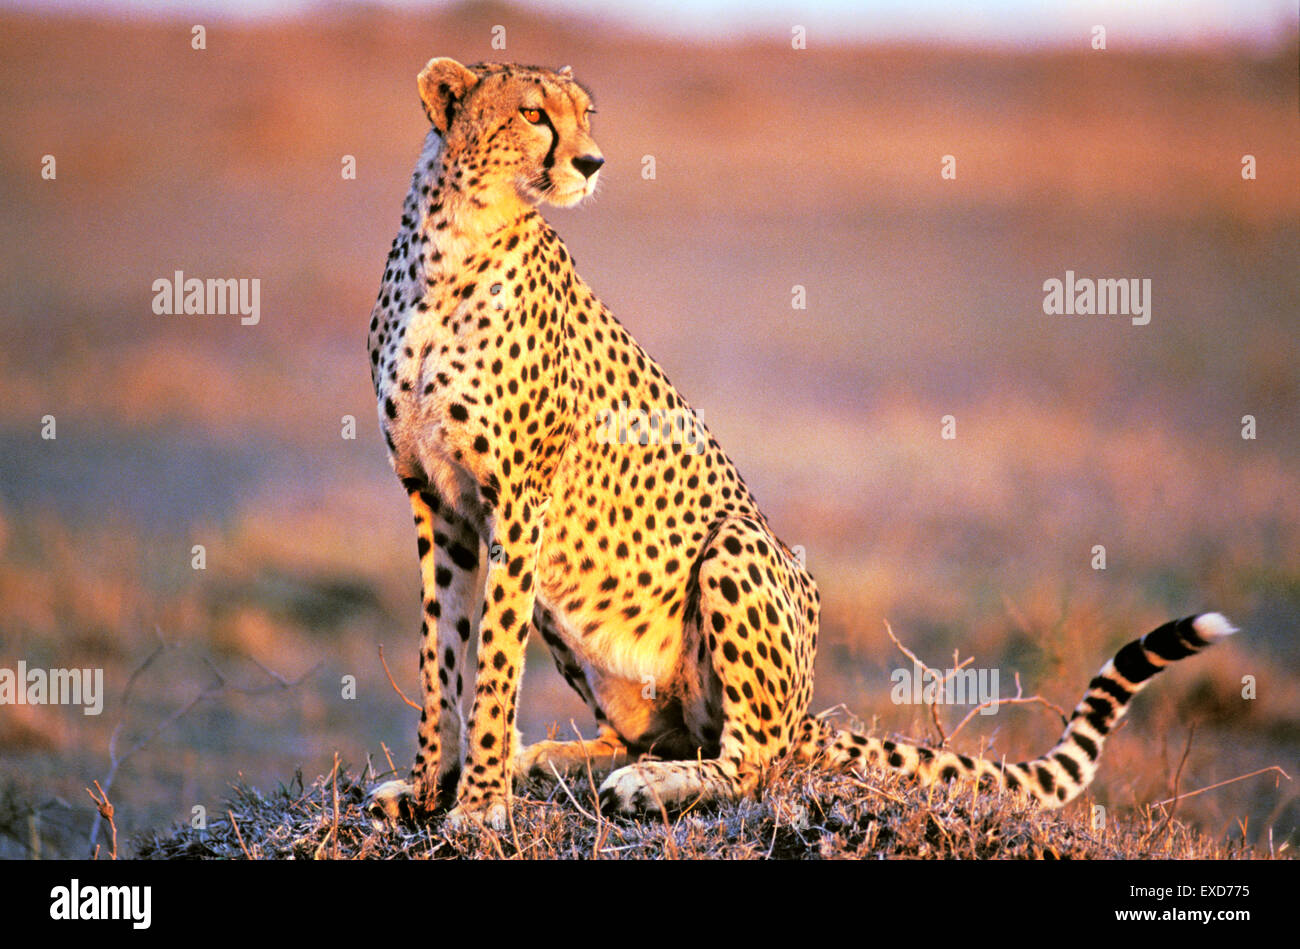 Cheetah sentado en Savannah en horas de la tarde la luz del sol Foto de stock